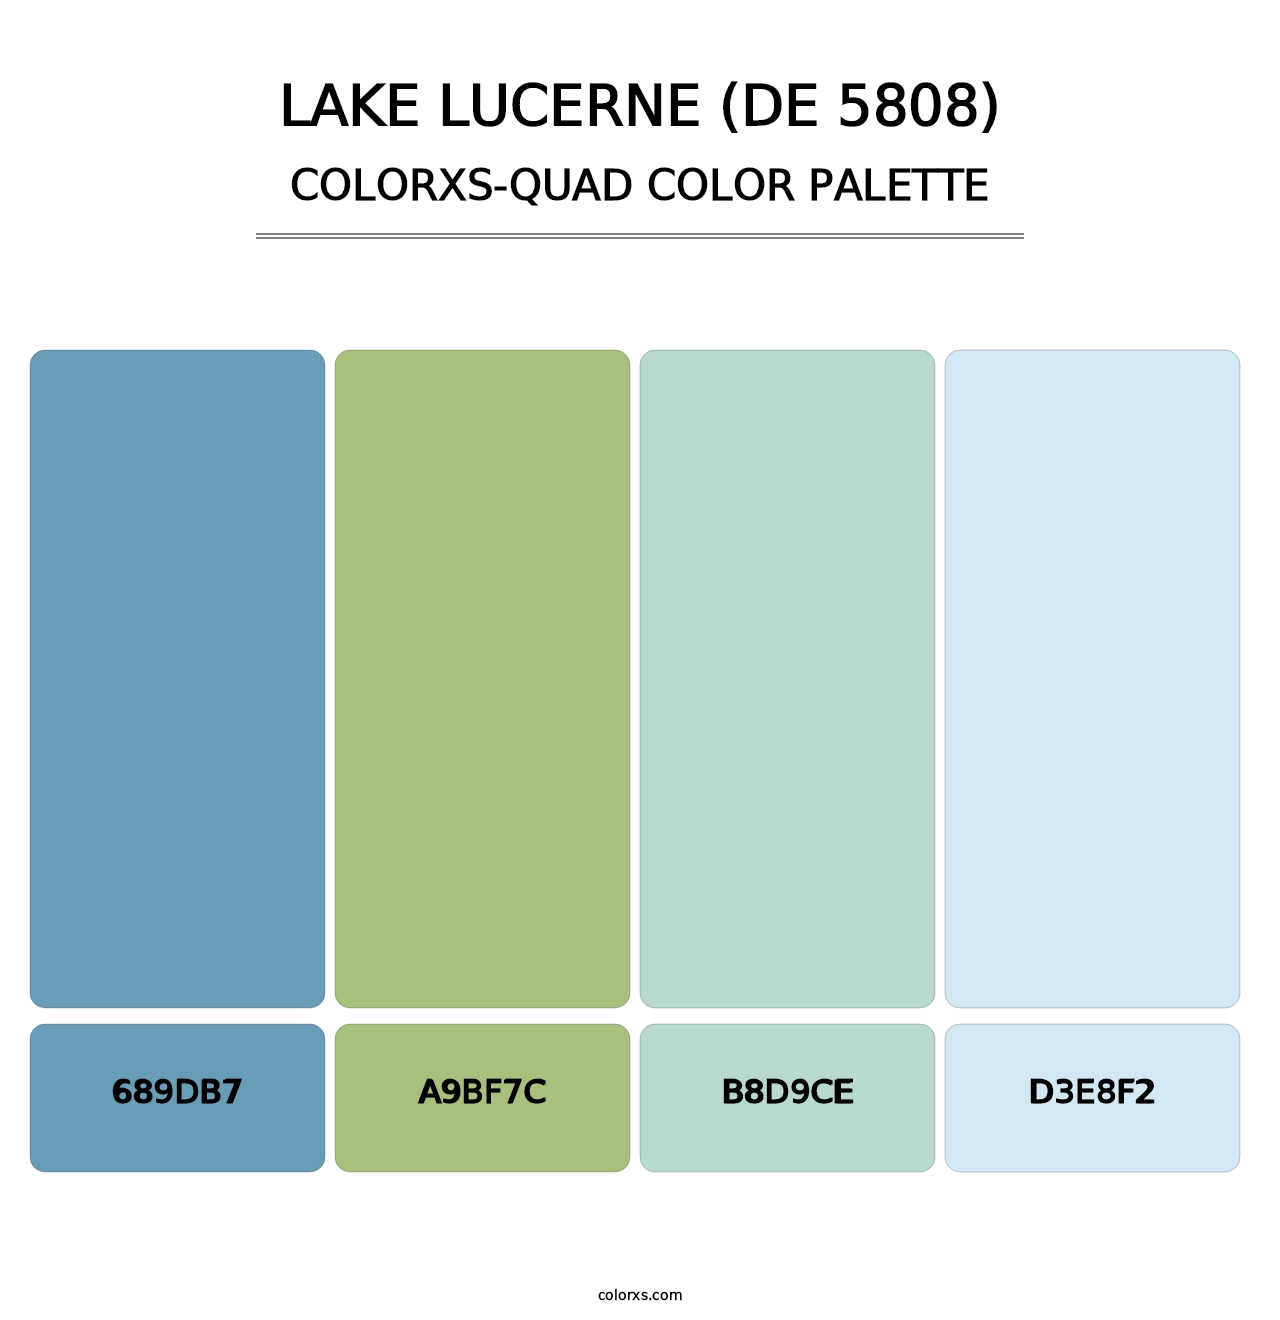 Lake Lucerne (DE 5808) - Colorxs Quad Palette